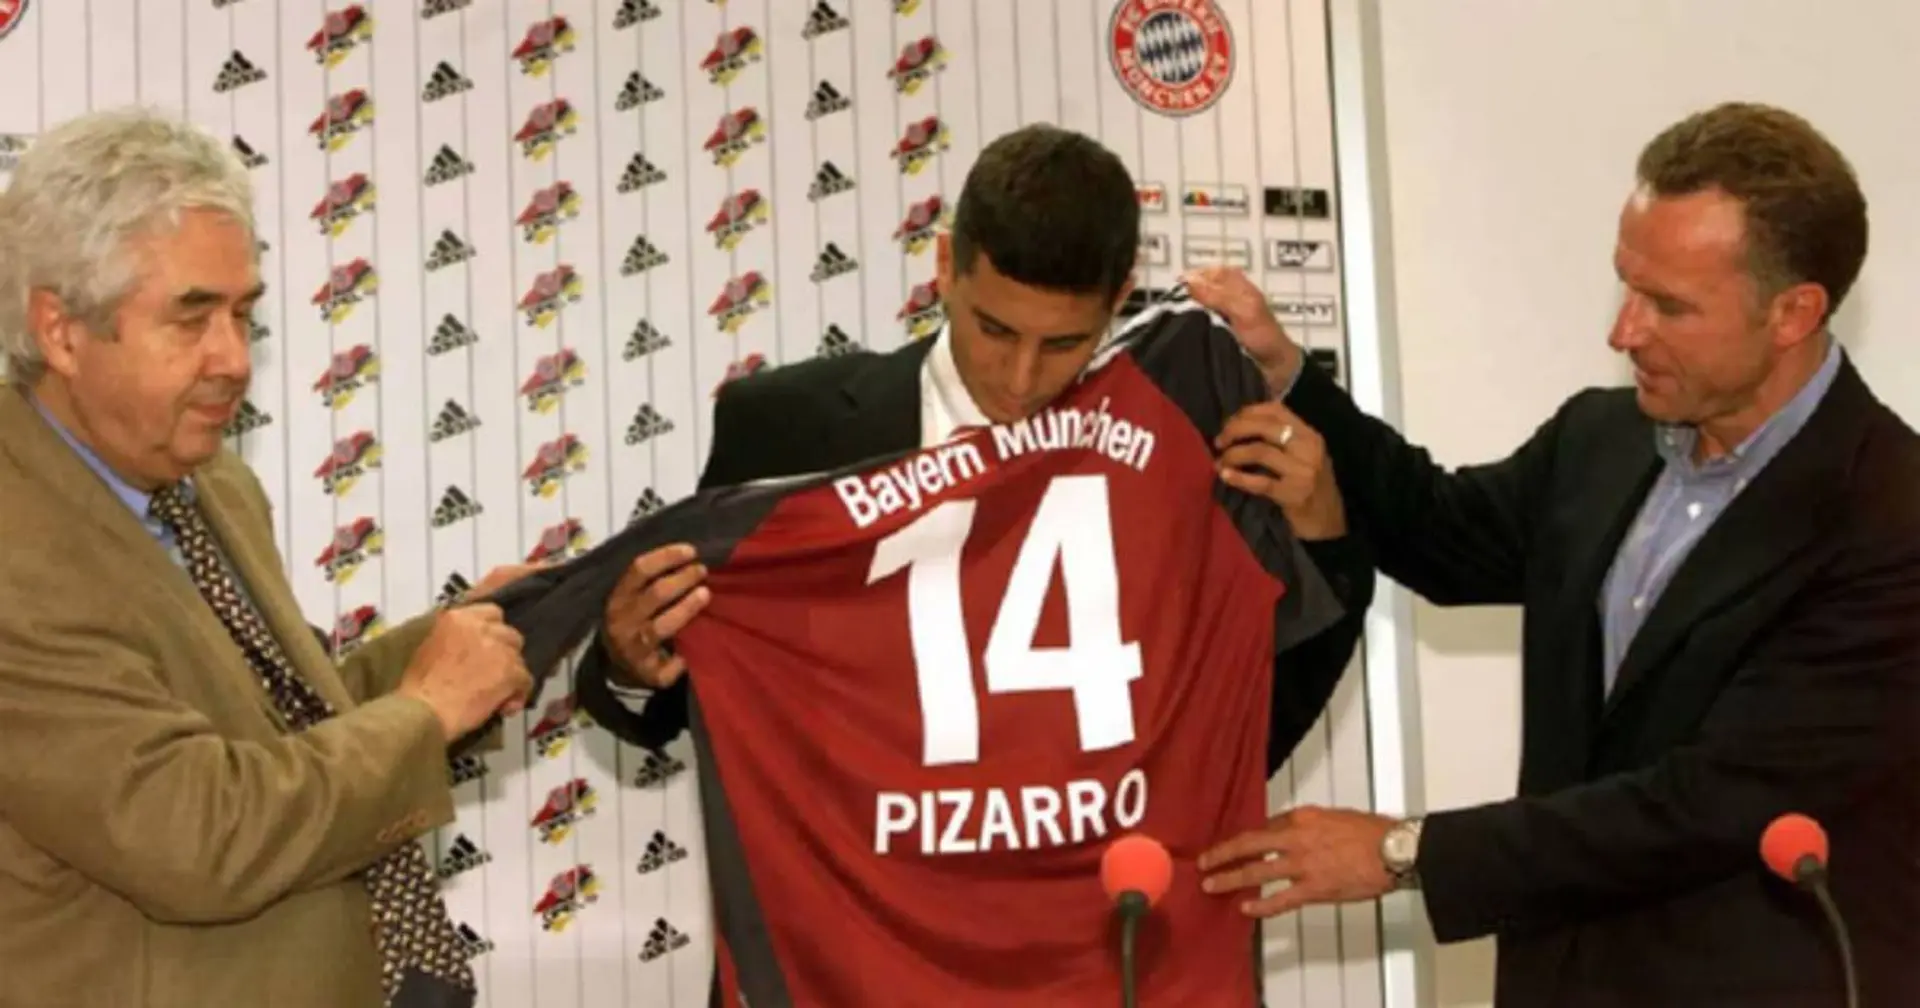 Claudio Pizarro wird 44: Er entschied sich einst gegen einen Wechsel zu Real und ging zu Bayern